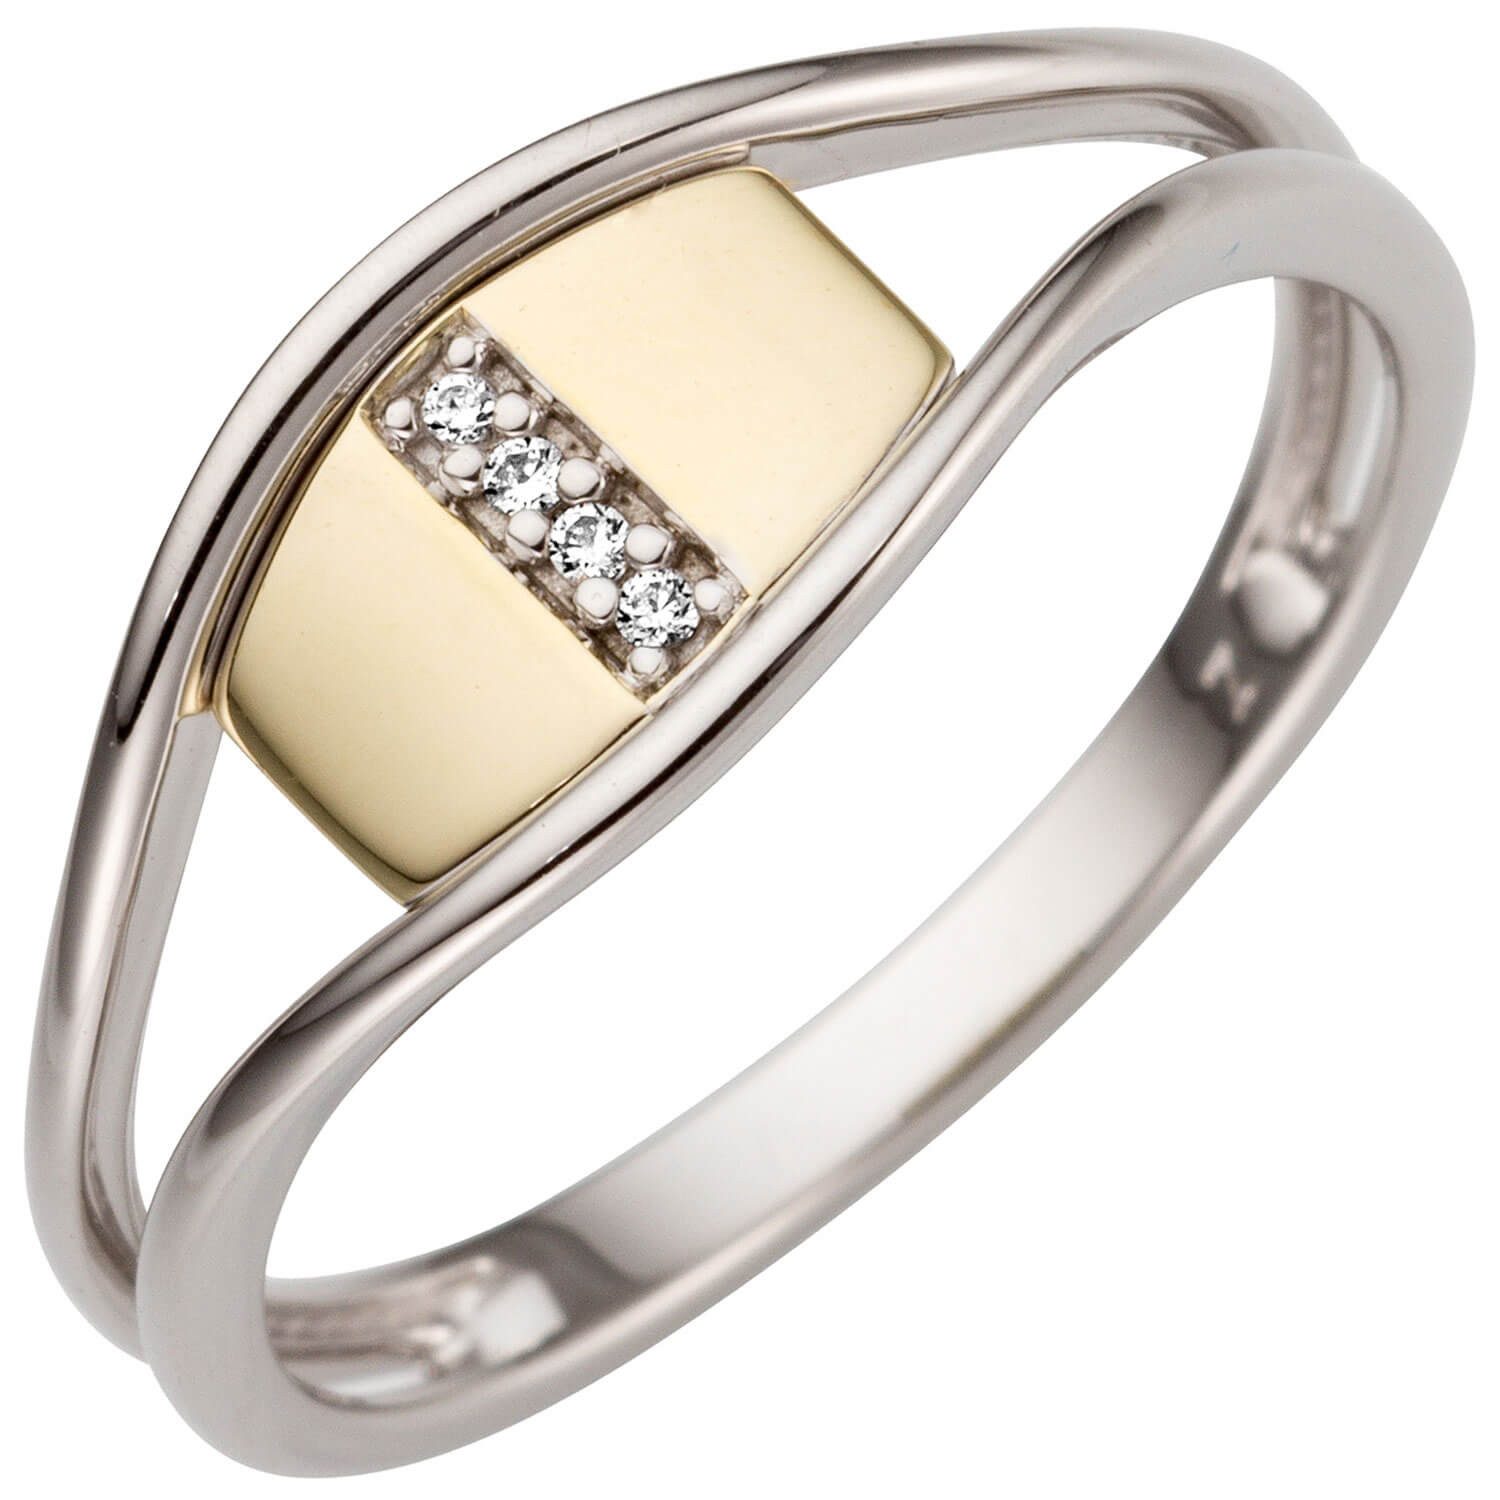 Schmuck Krone Silberring Ring aus 585 Gold bicolor mit 4 Brillanten, Gold 585